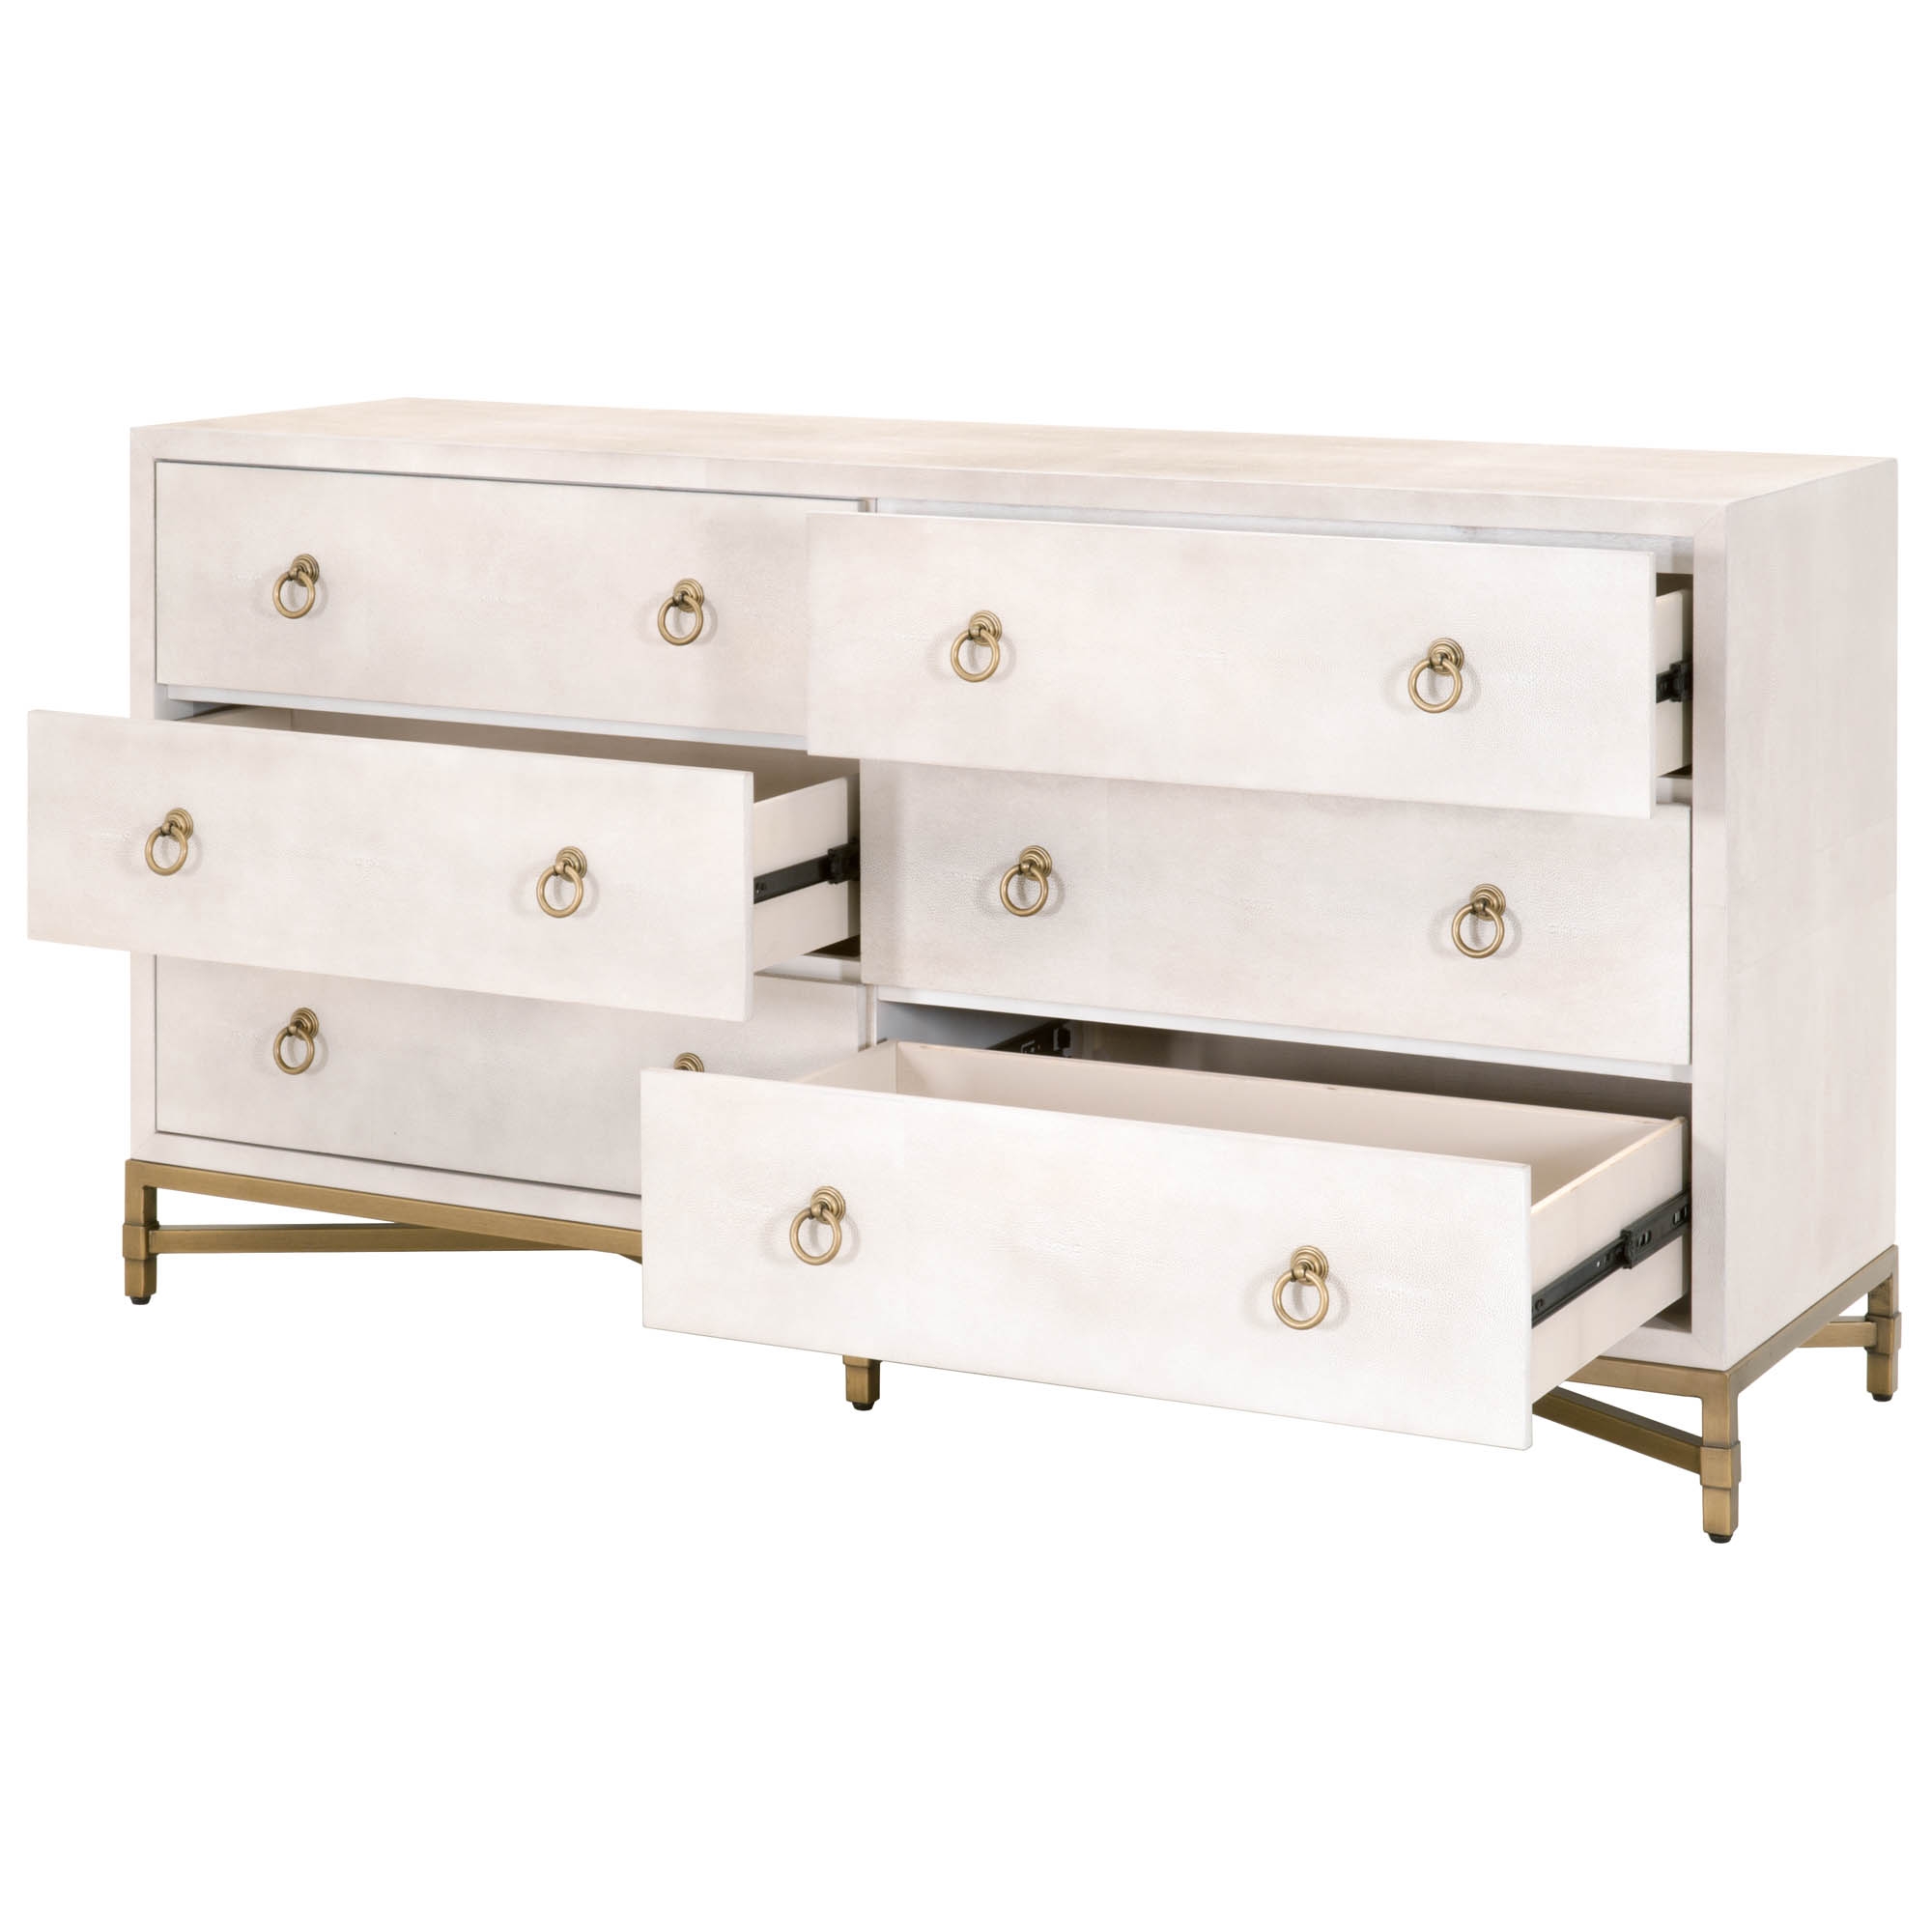 Strand Shagreen 6-Drawer Double Dresser, White & Gold - Image 3